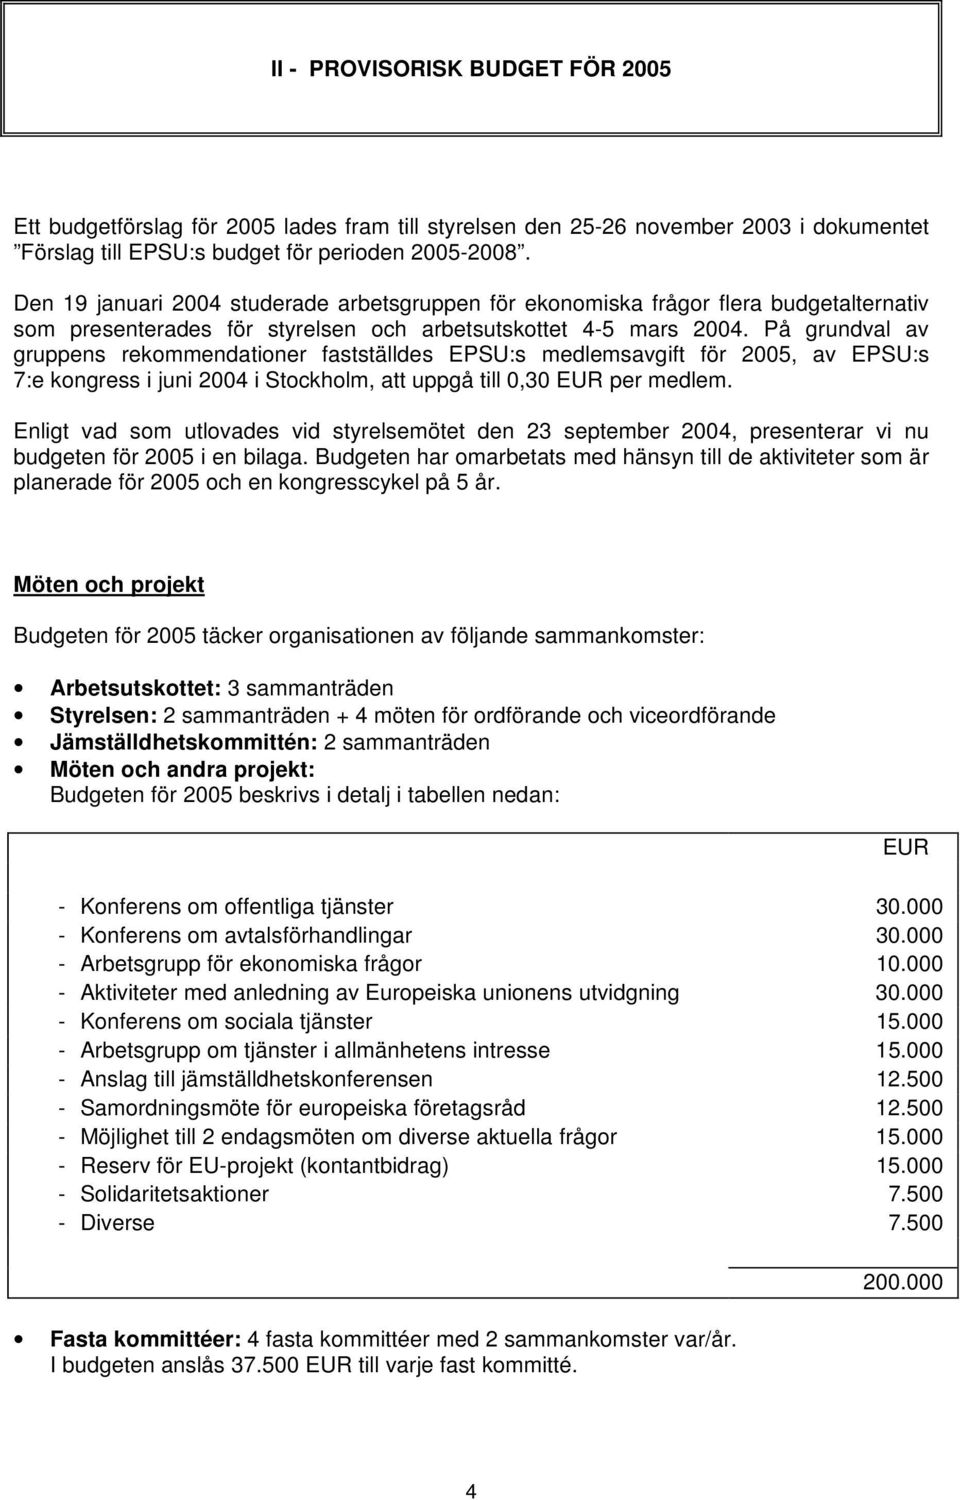 På grundval av gruppens rekommendationer fastställdes EPSU:s medlemsavgift för 2005, av EPSU:s 7:e kongress i juni 2004 i Stockholm, att uppgå till 0,30 EUR per medlem.